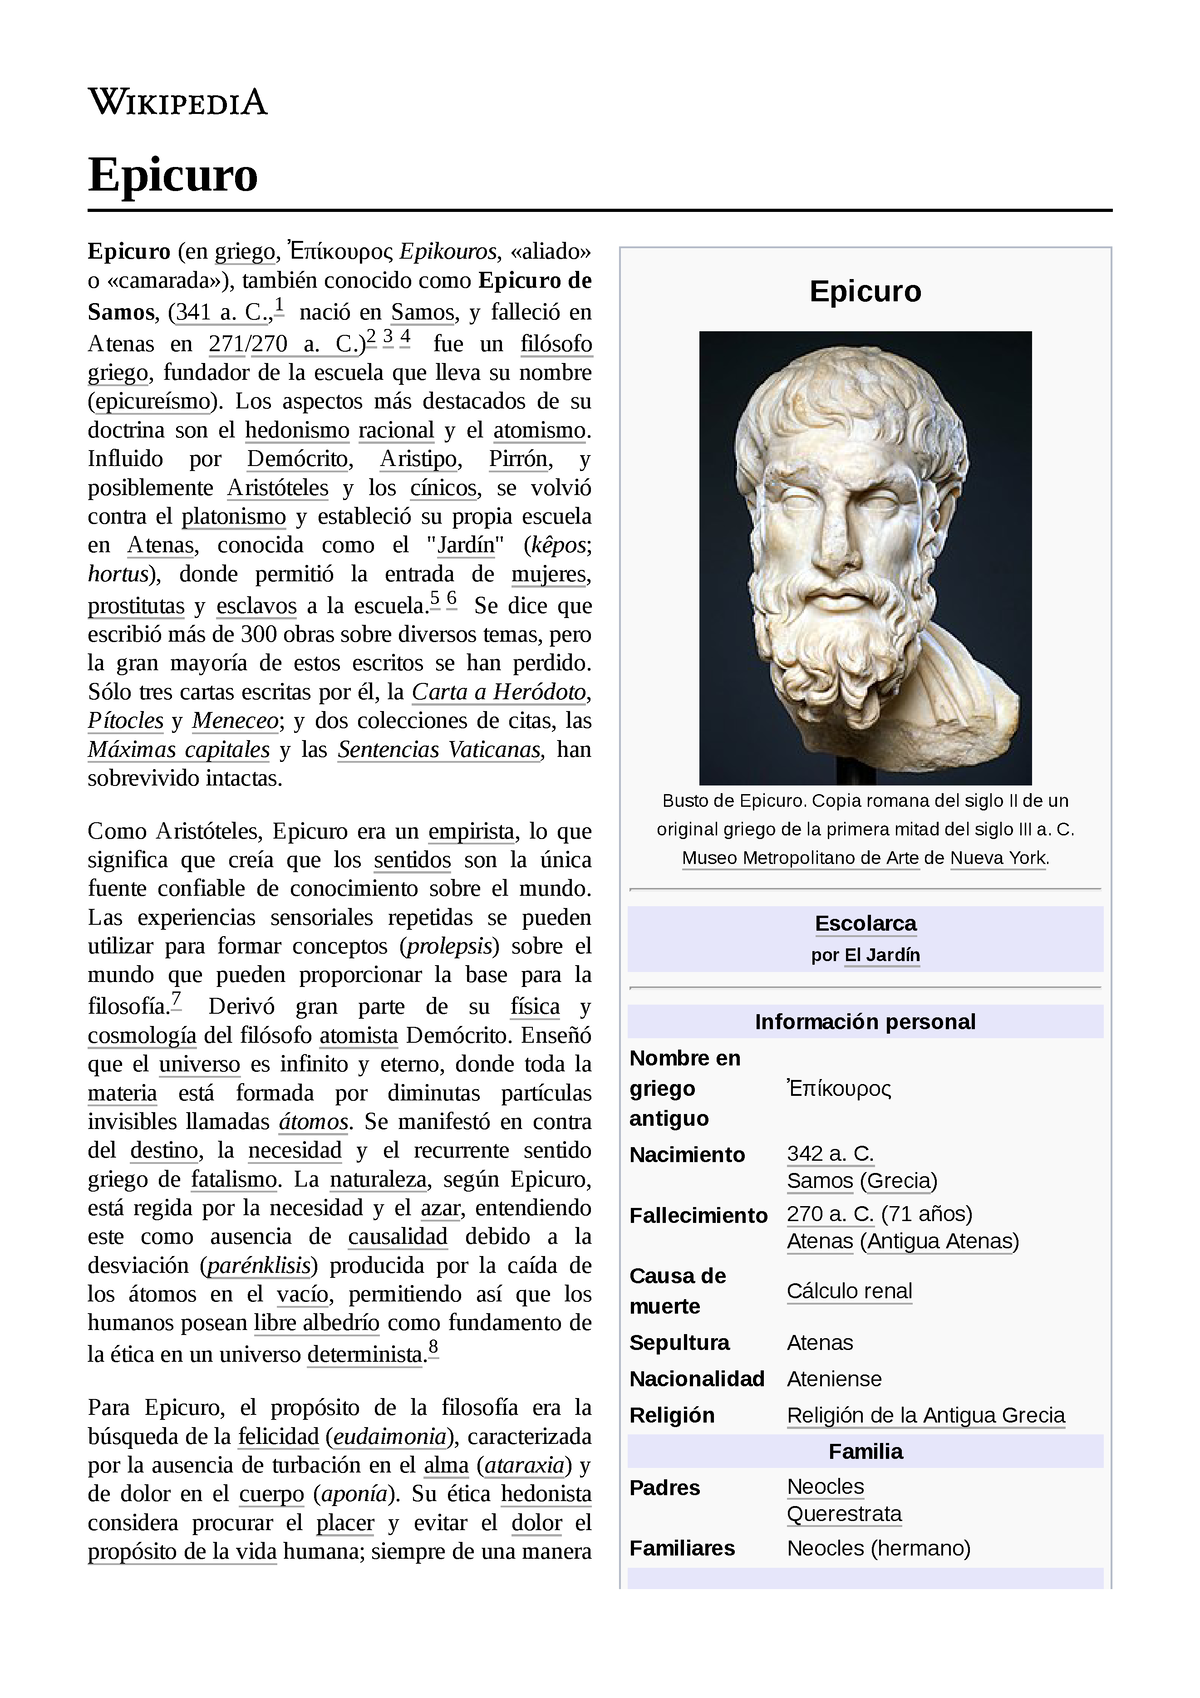 Epicuro de Samos de Atea - Epicuro Busto de Epicuro. Copia romana del siglo  II de un original griego - Studocu